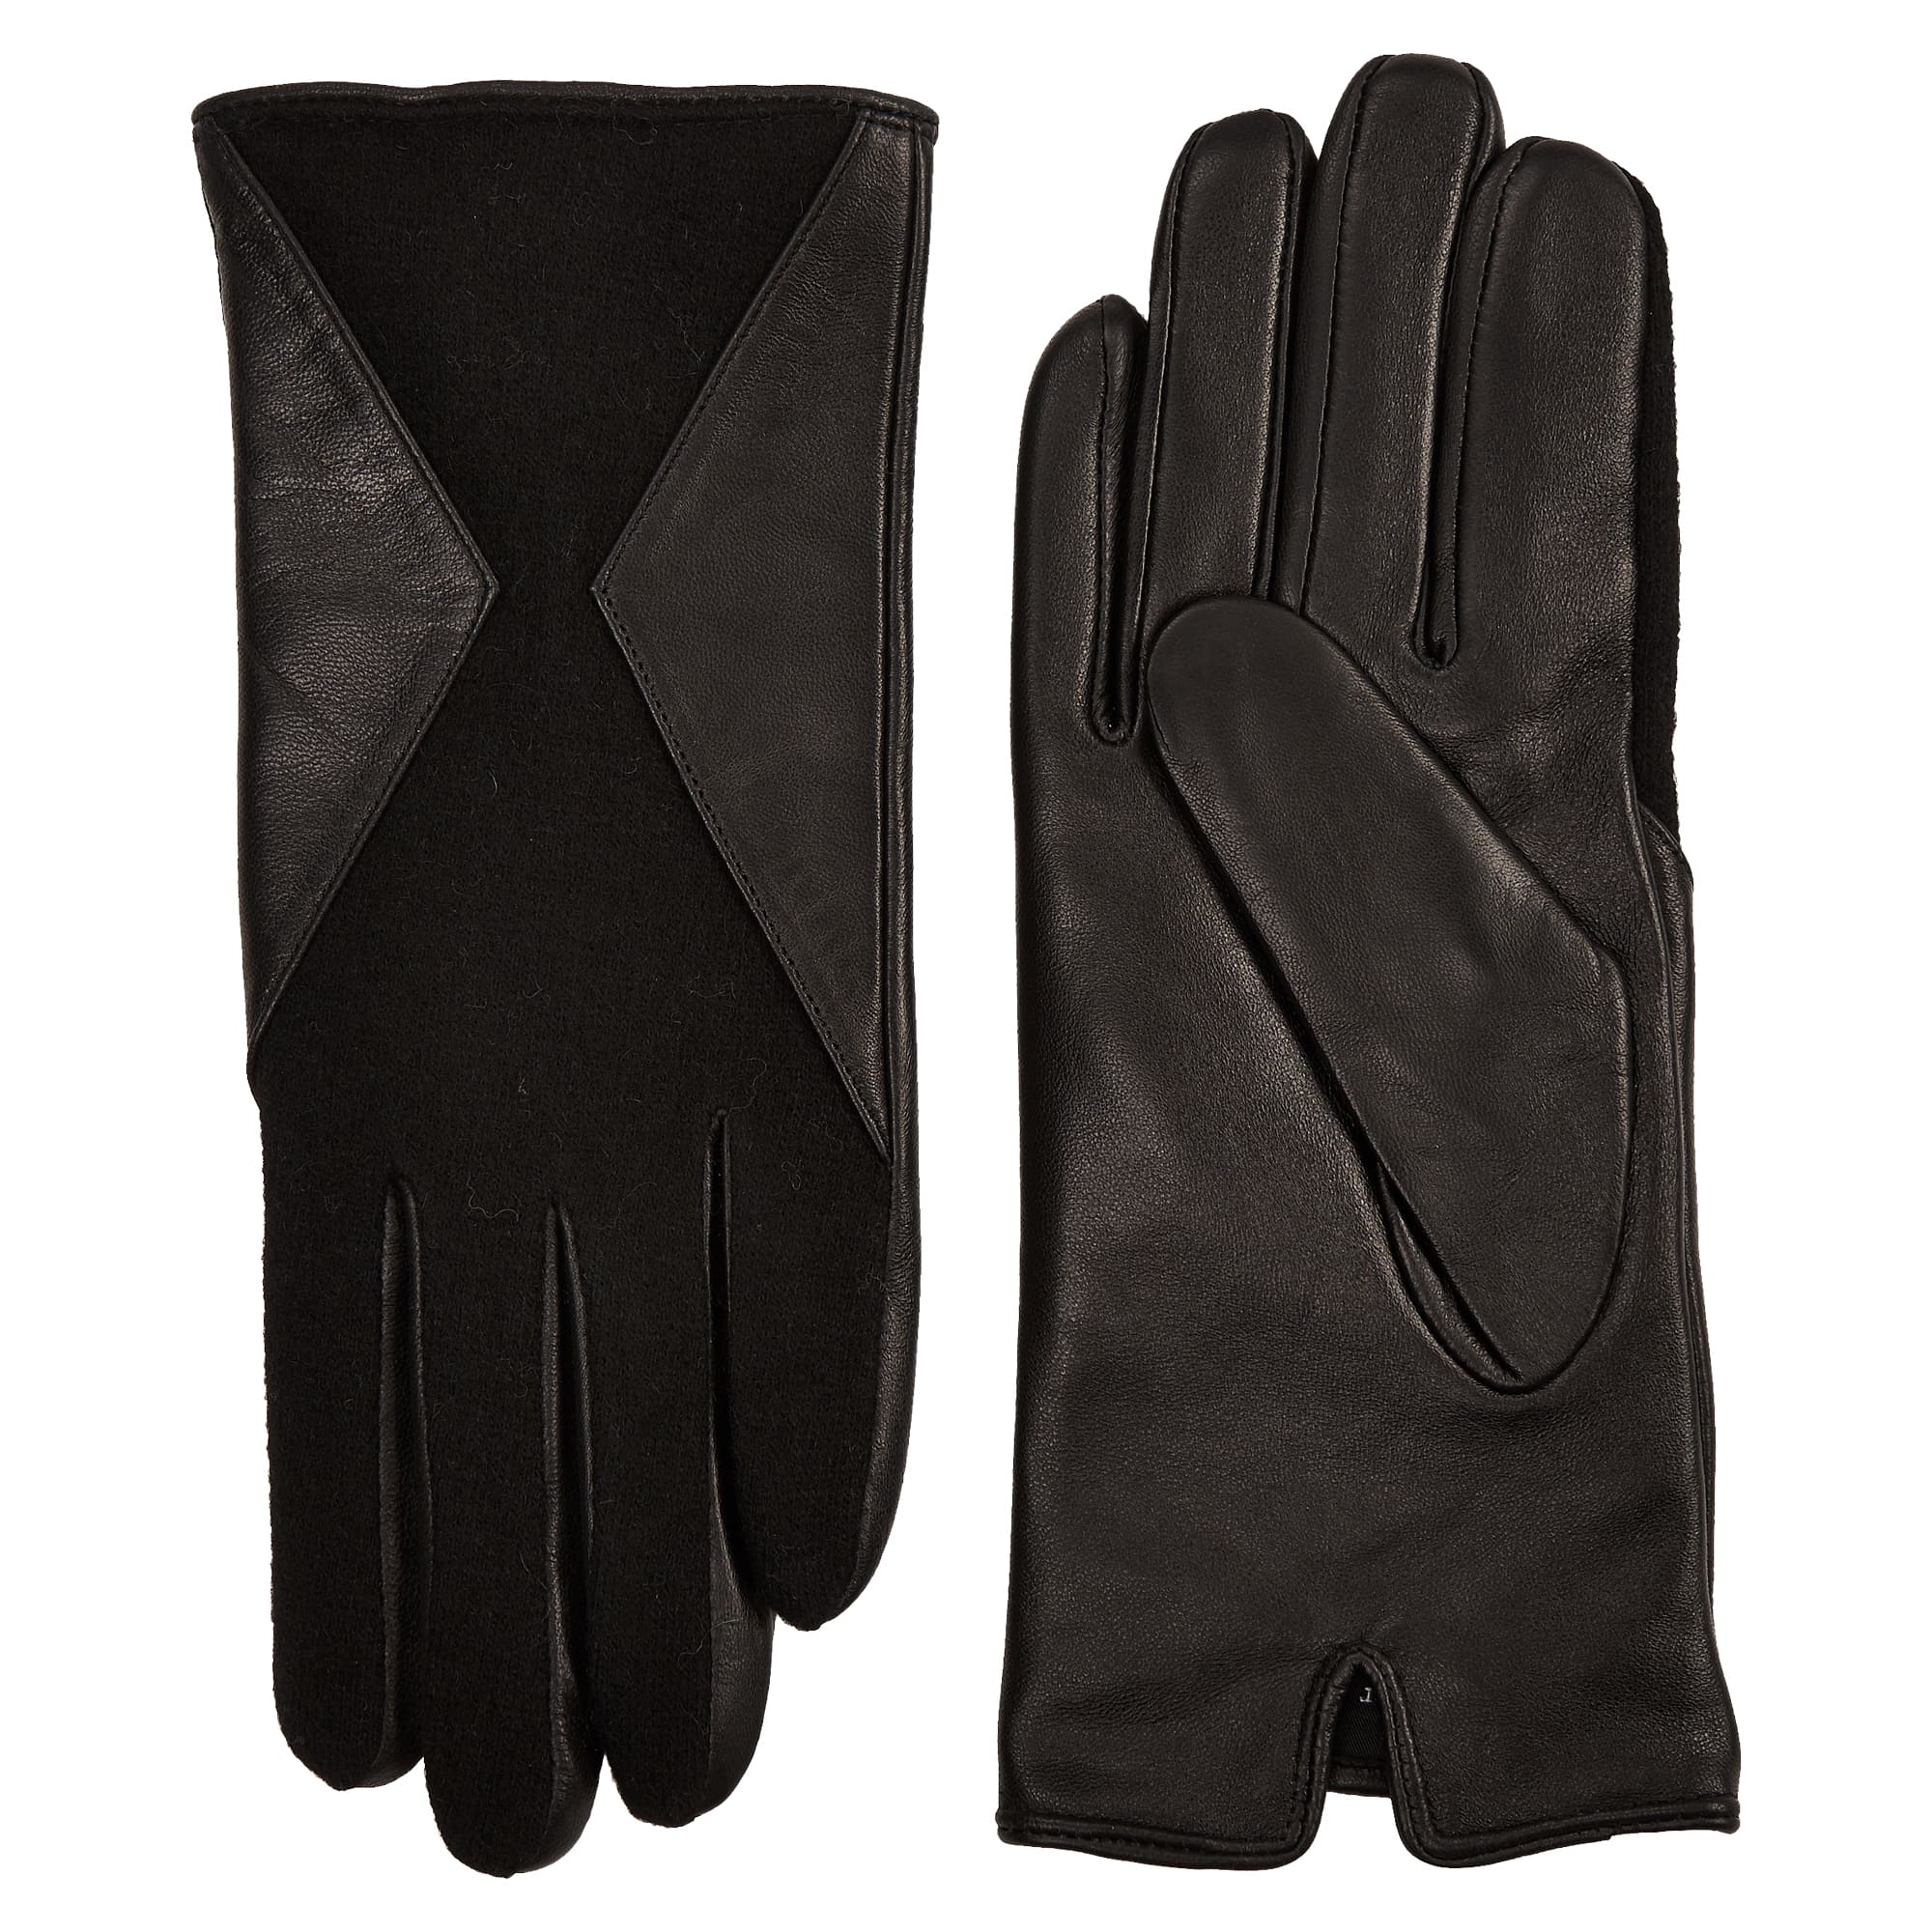 Др.Коффер H660146-236-04 перчатки женские touch (7,5), размер 7, цвет черный - фото 1